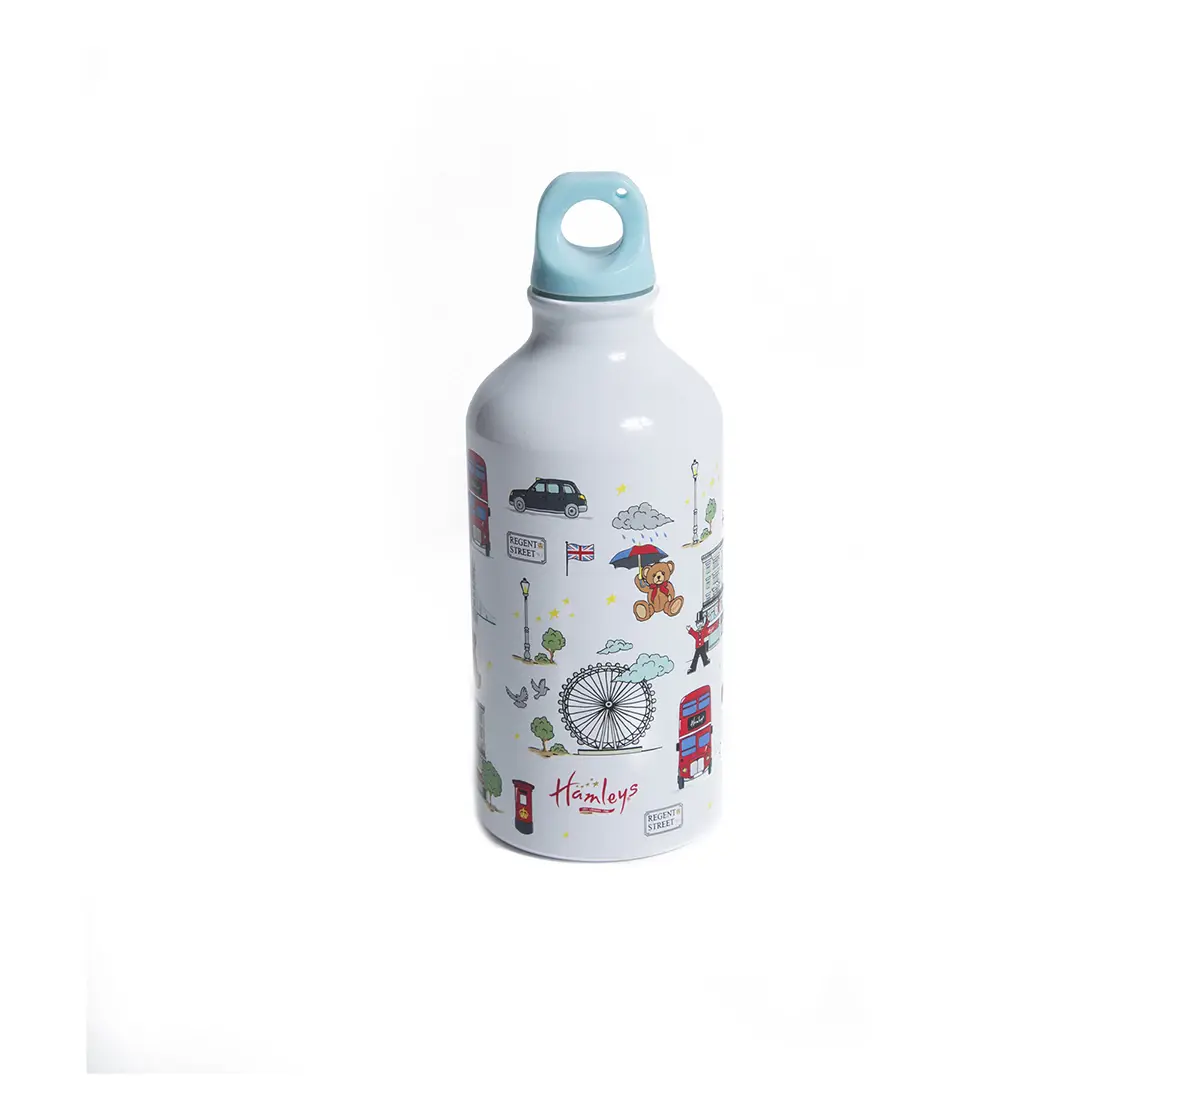  Hamleys Celebrate London Drinks Bottle Impulse Toys for Kids age 5Y+ (White)